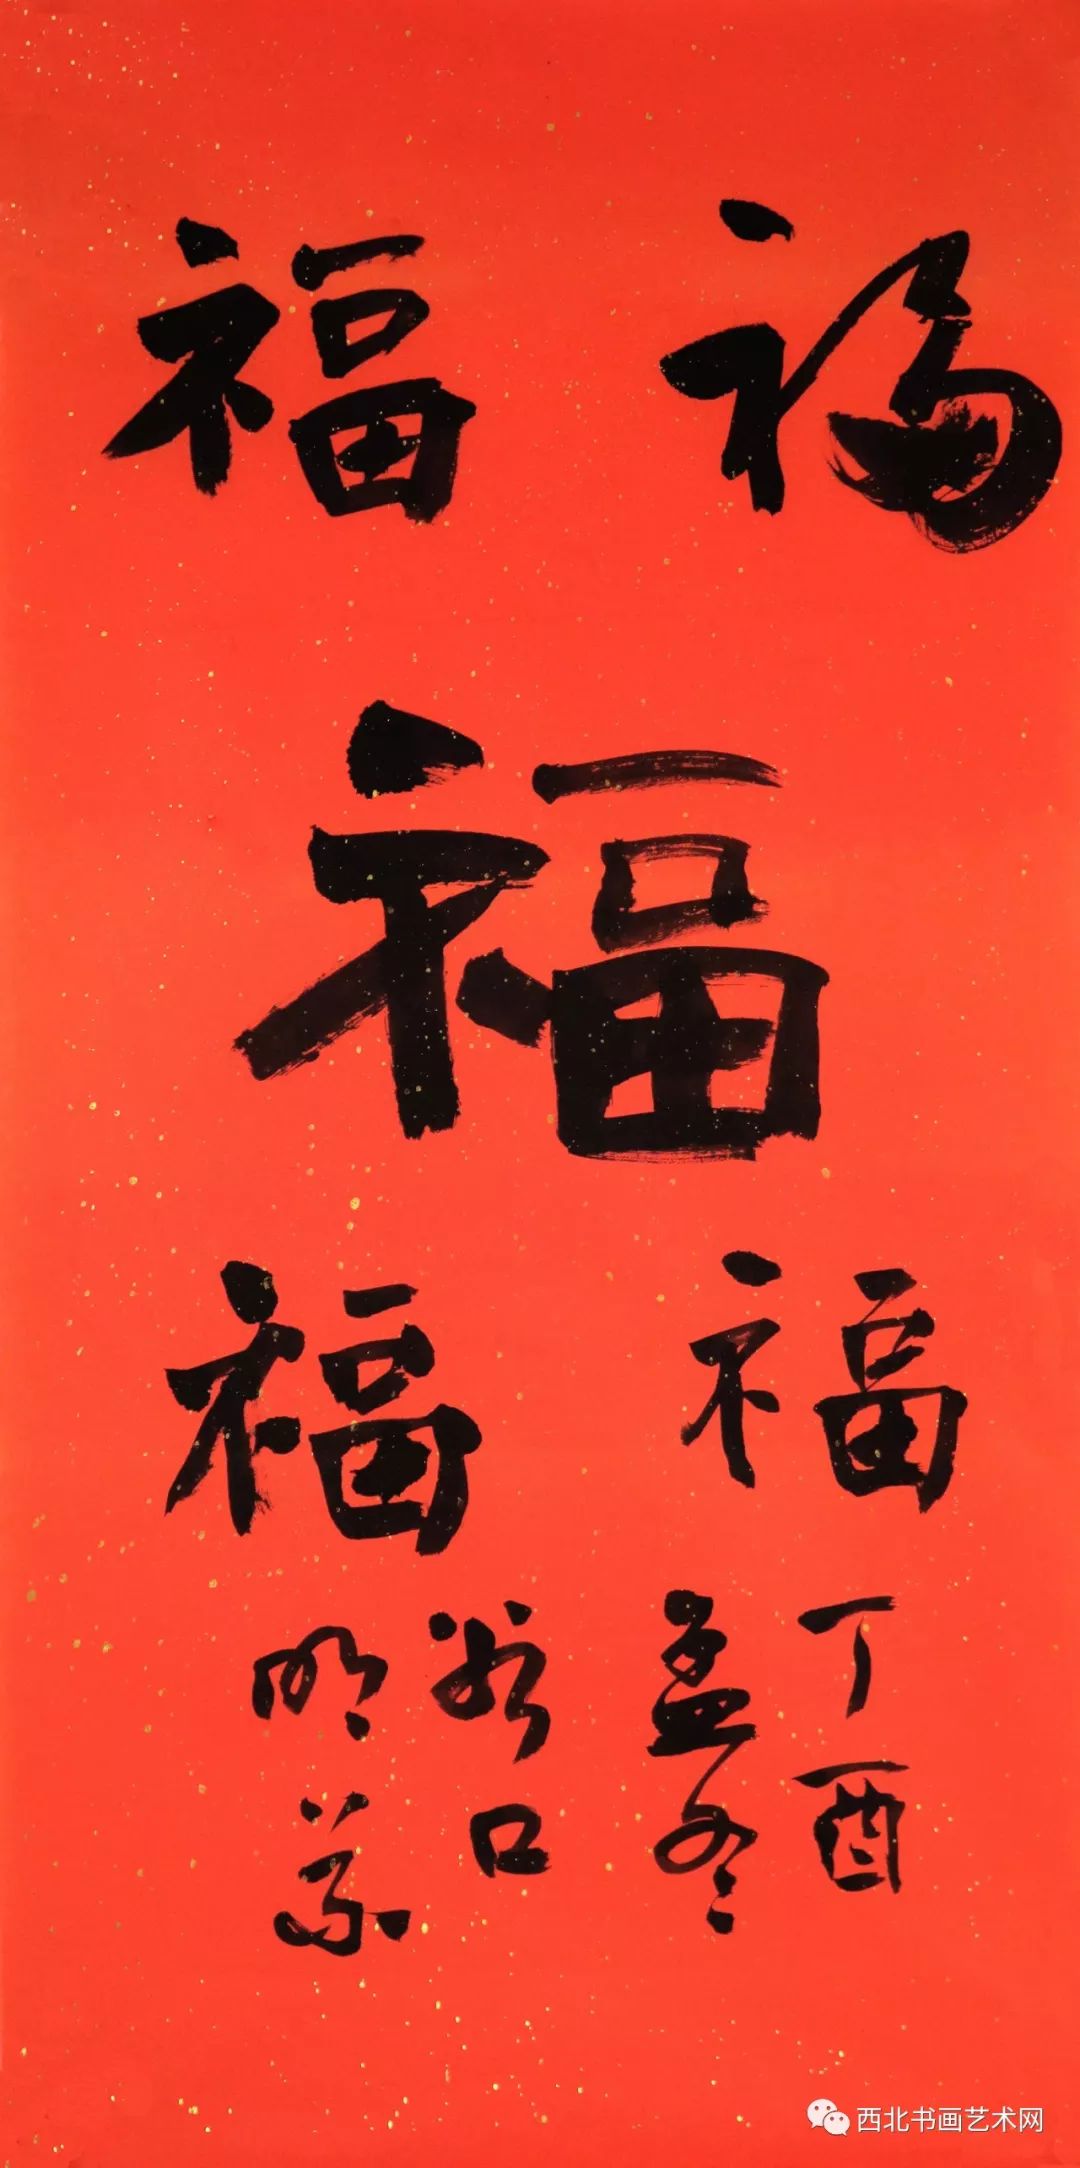 五福临门:西北书画艺术网吉年写"五福"作品微展之第四福